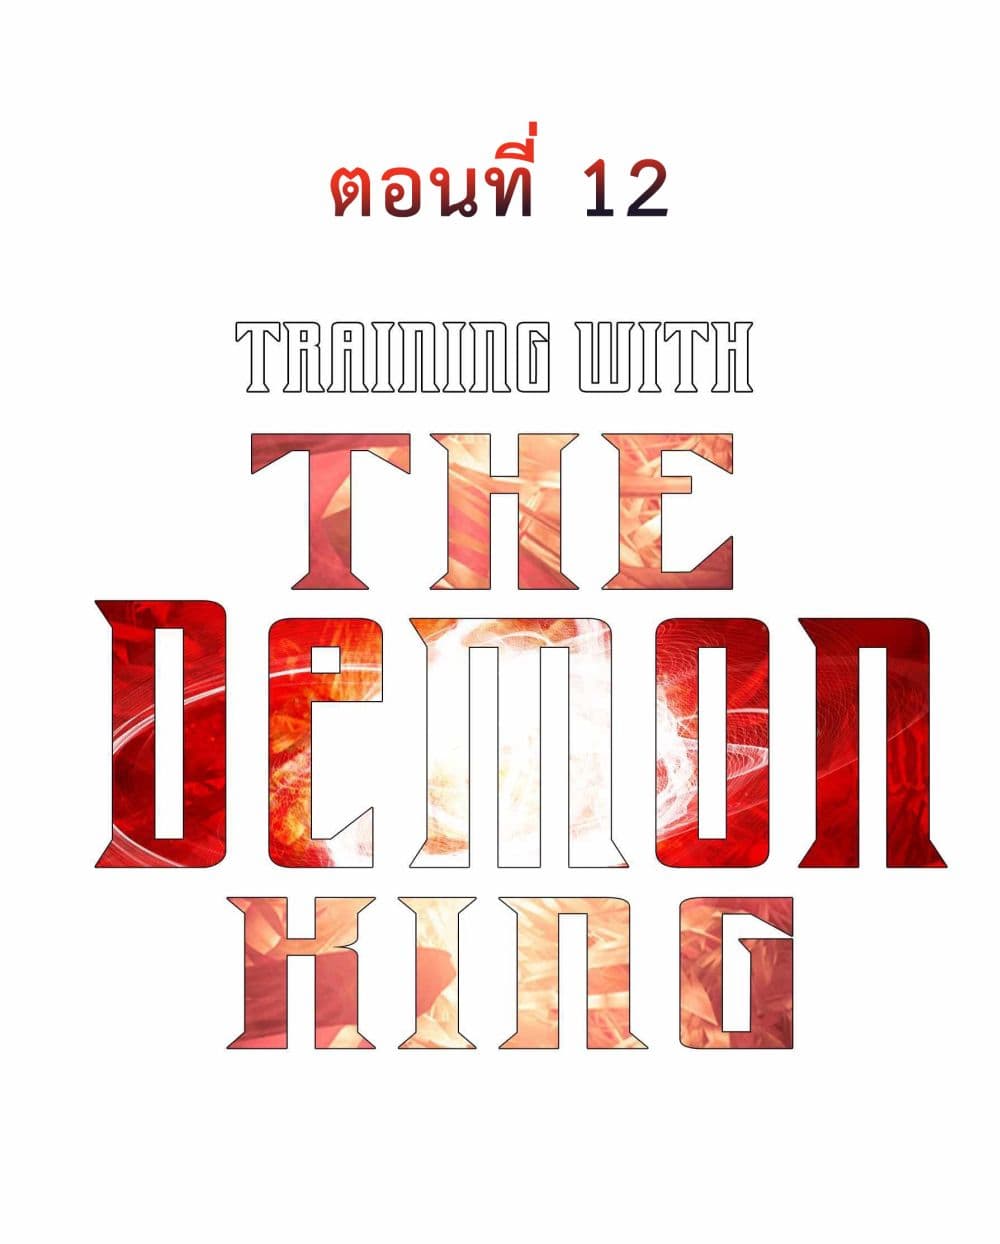 Training With The Demon King เหล่าผู้กล้าอยากฝึกฝนกับราชาปีศาจ 12-12